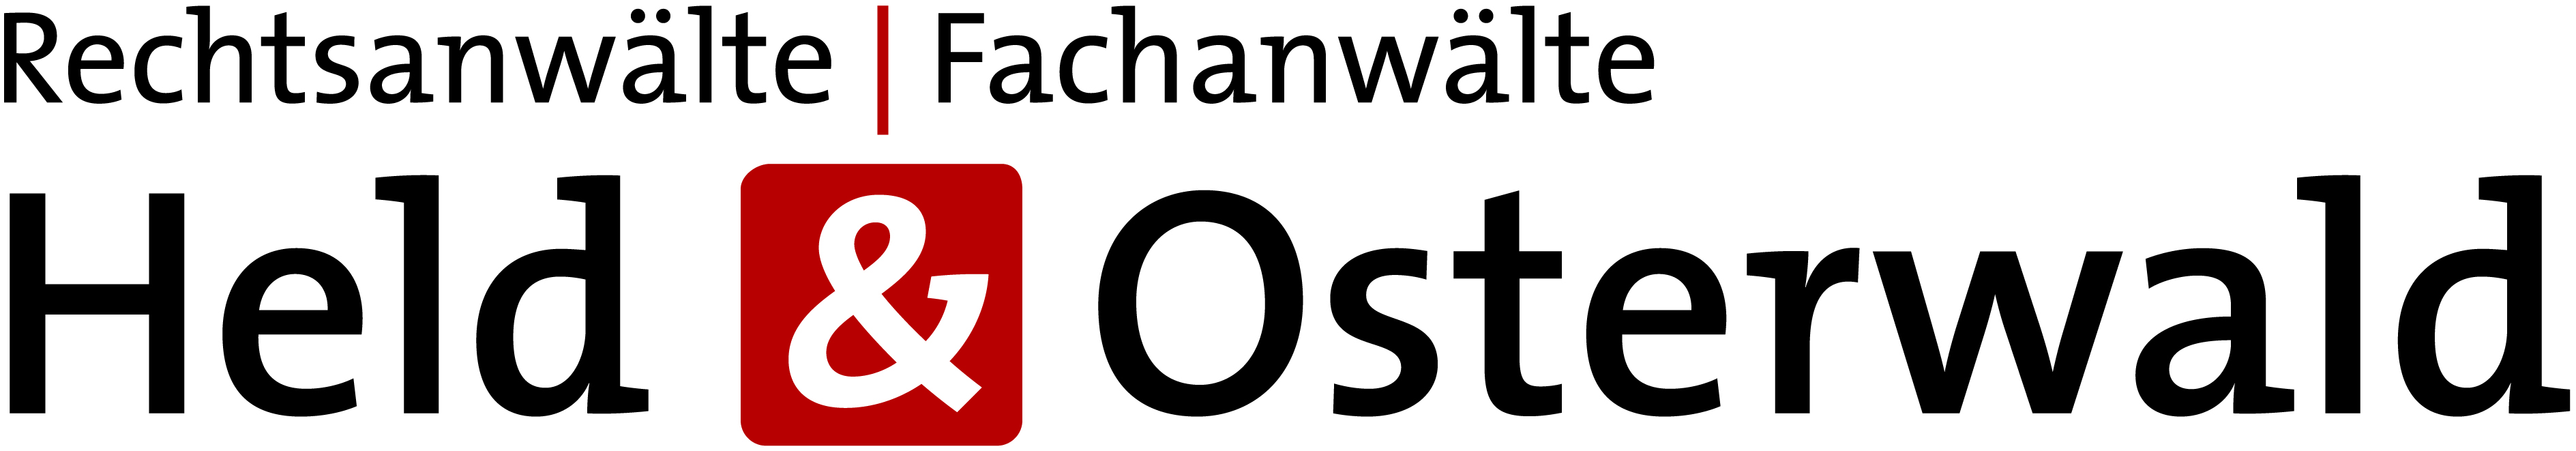 Logo Held & Osterwald Rechtsanwälte Fachanwälte Bielefeld